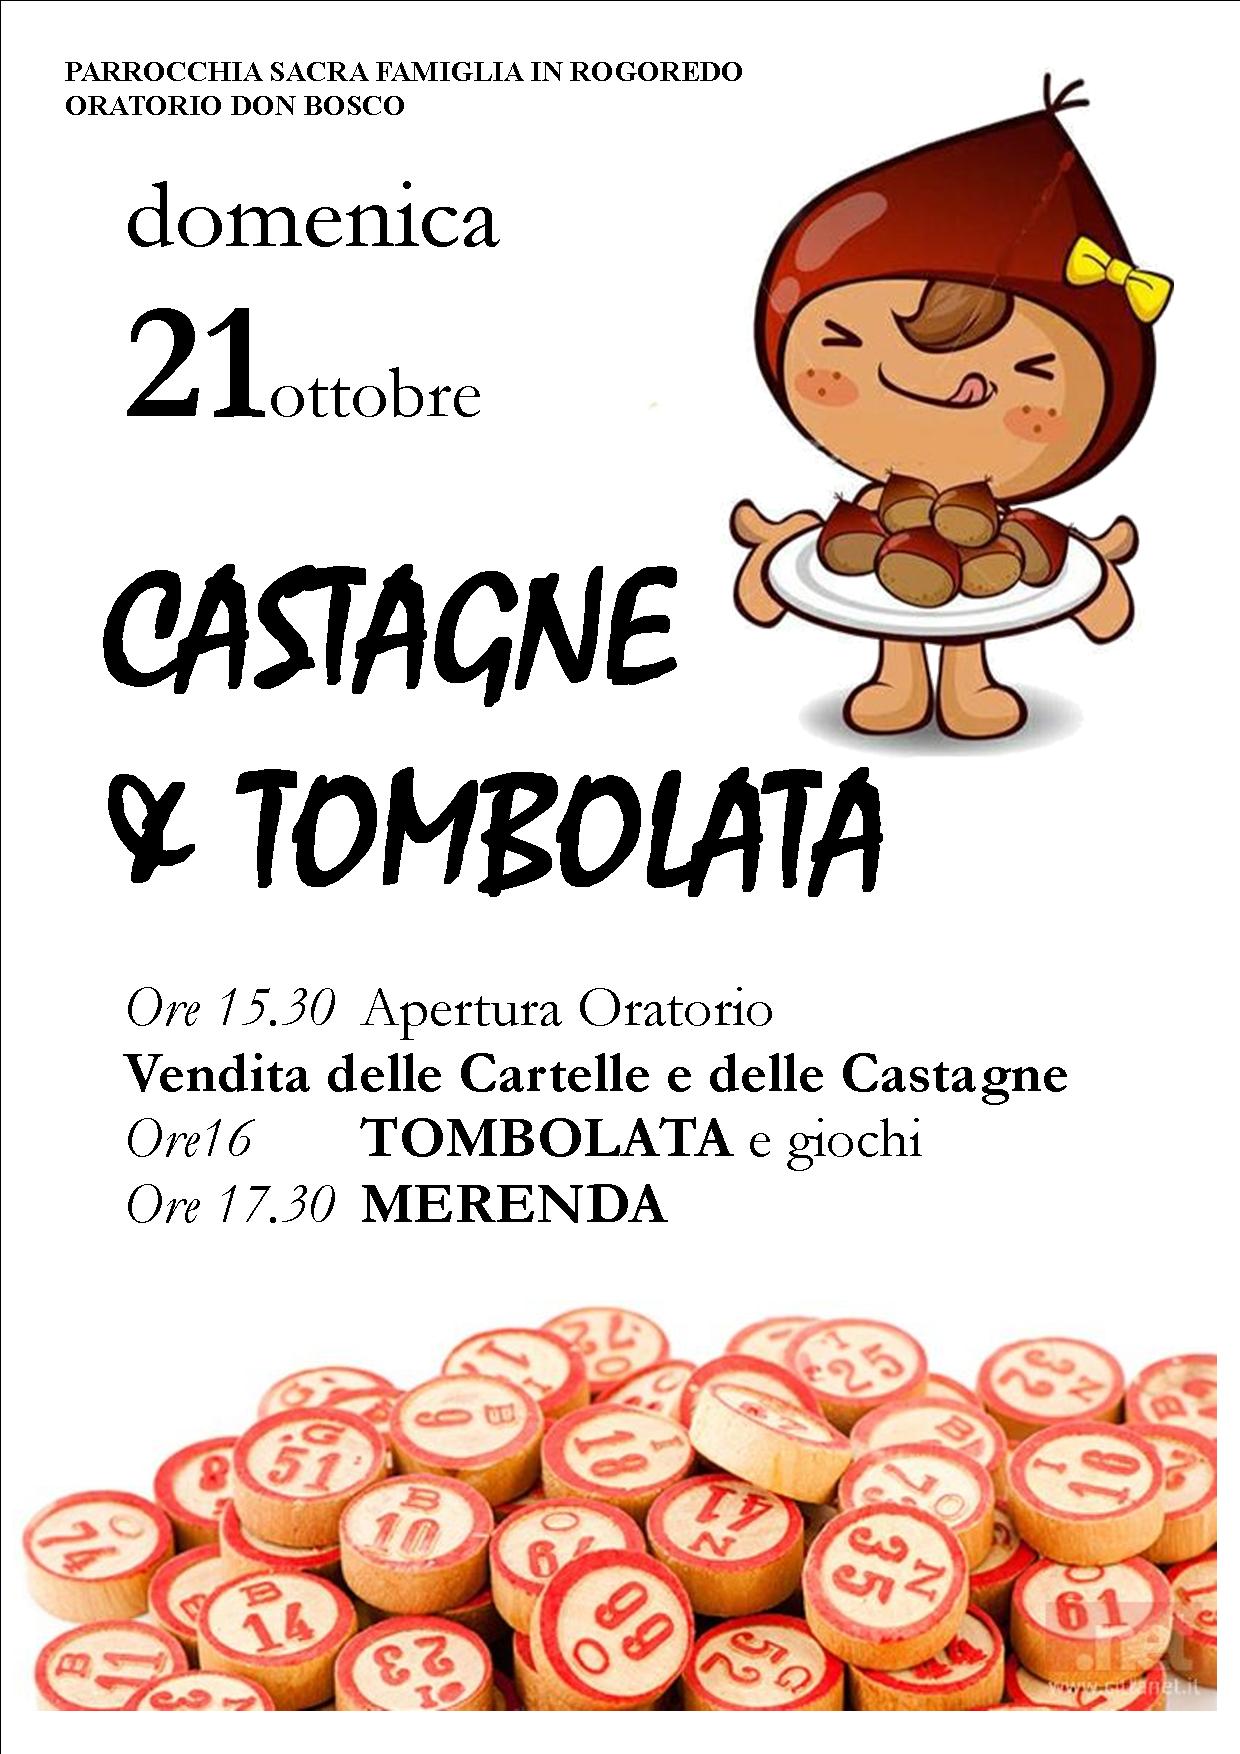 Castagnata 2018